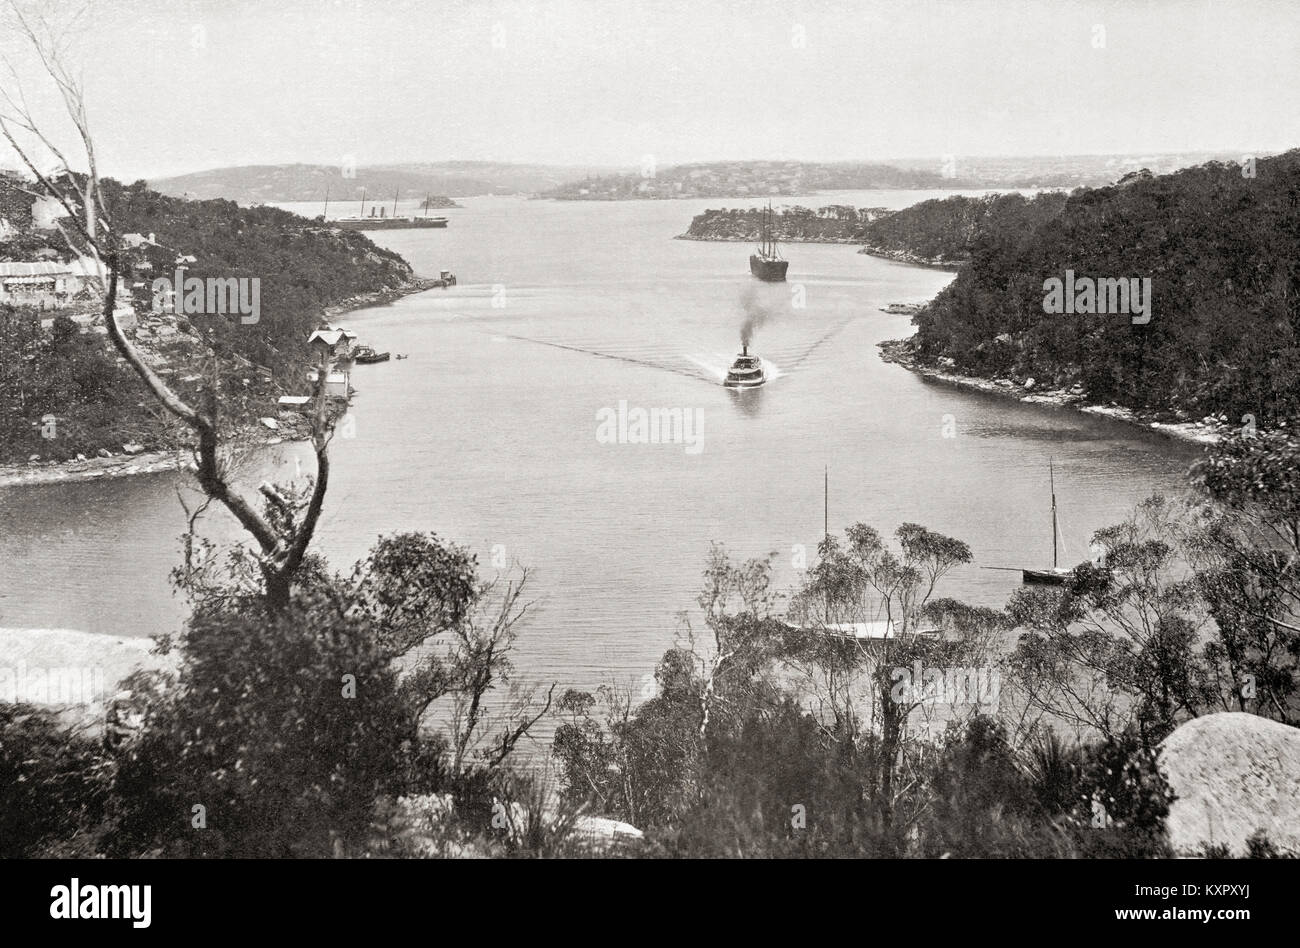 Il Porto di Sydney, Sydney, Nuovo Galles del Sud, Australia, visto qui prima della costruzione del Ponte del Porto di Sydney che è iniziato nel 1926. Dalle meraviglie del mondo, pubblicato c.1920. Foto Stock